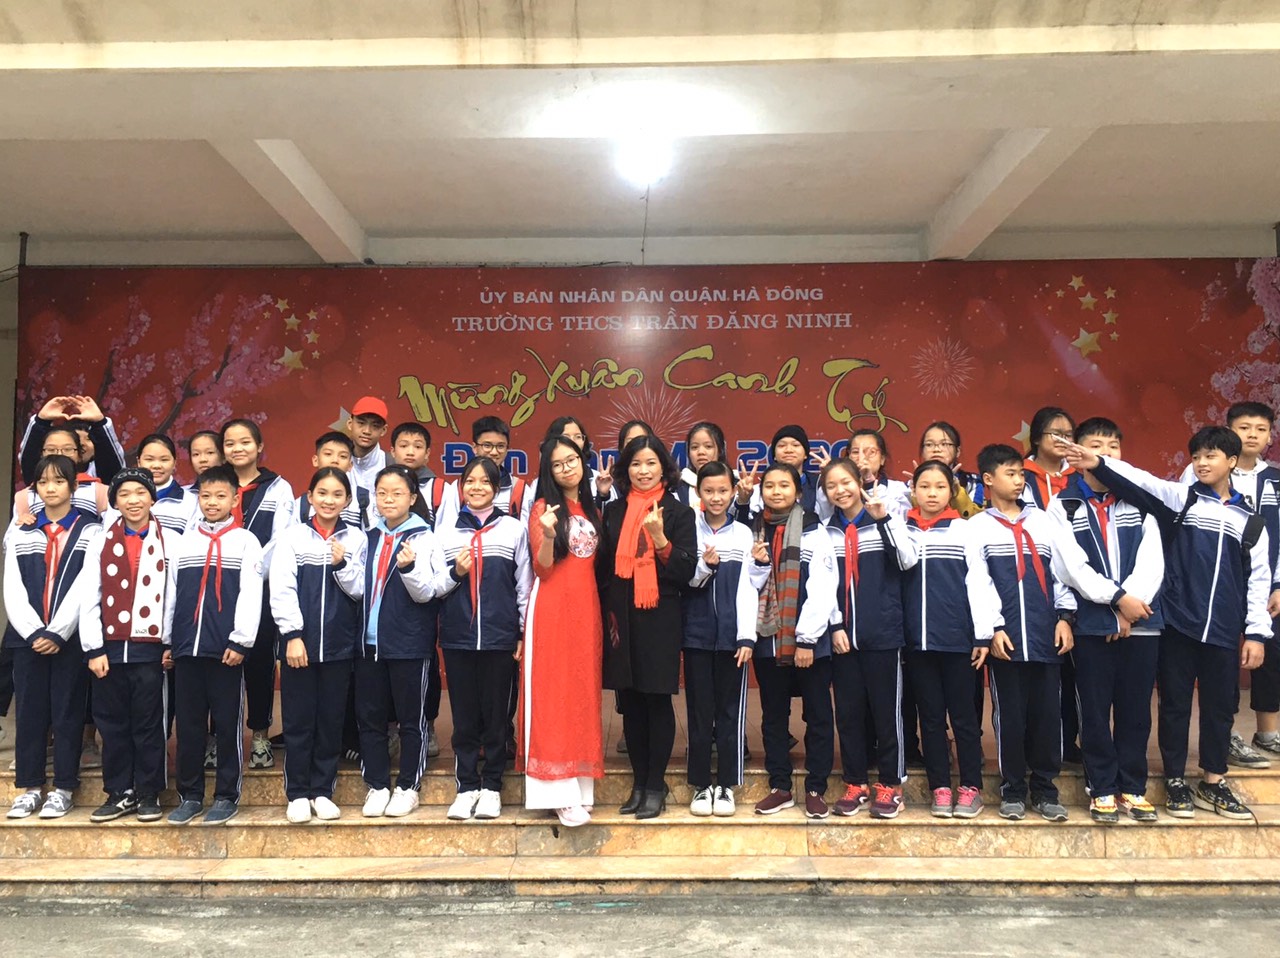 Một số hình ảnh về hoạt động "Chào Xuân Canh Tý 2020" của trường THCS Trần Đăng Ninh - Hà Đông